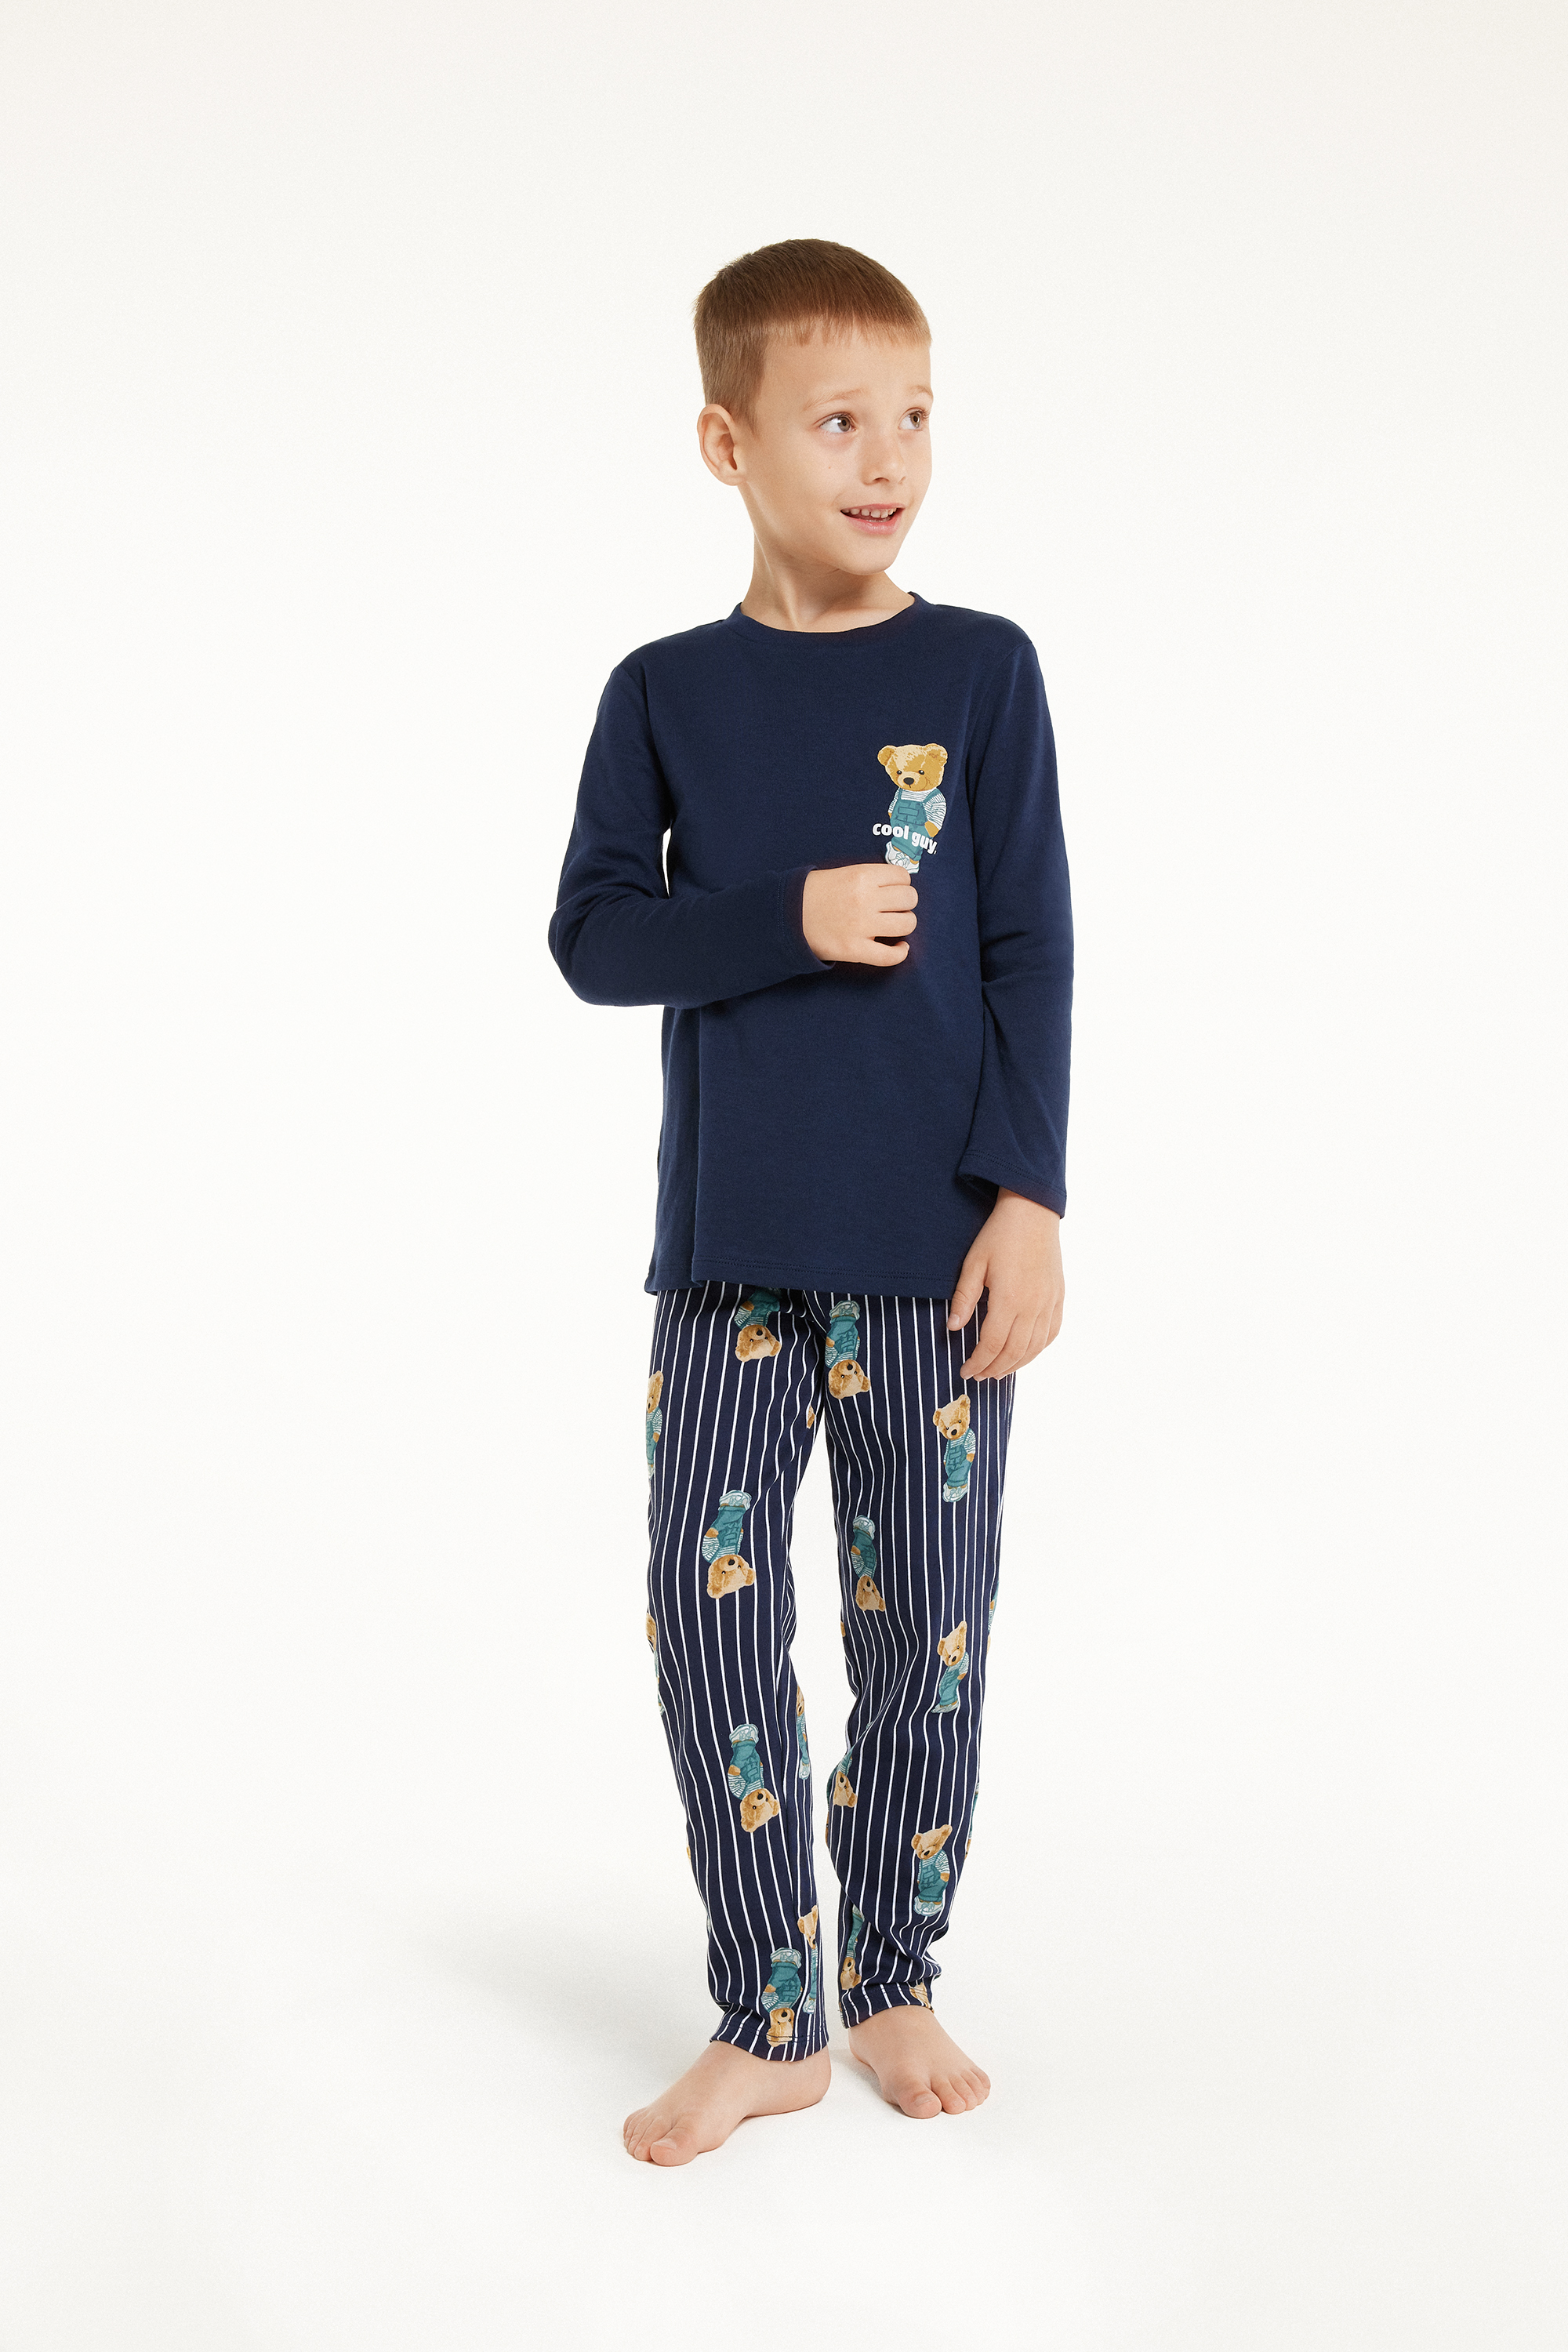 Langer Pyjama für Jungen aus Baumwolle Bärchenprint